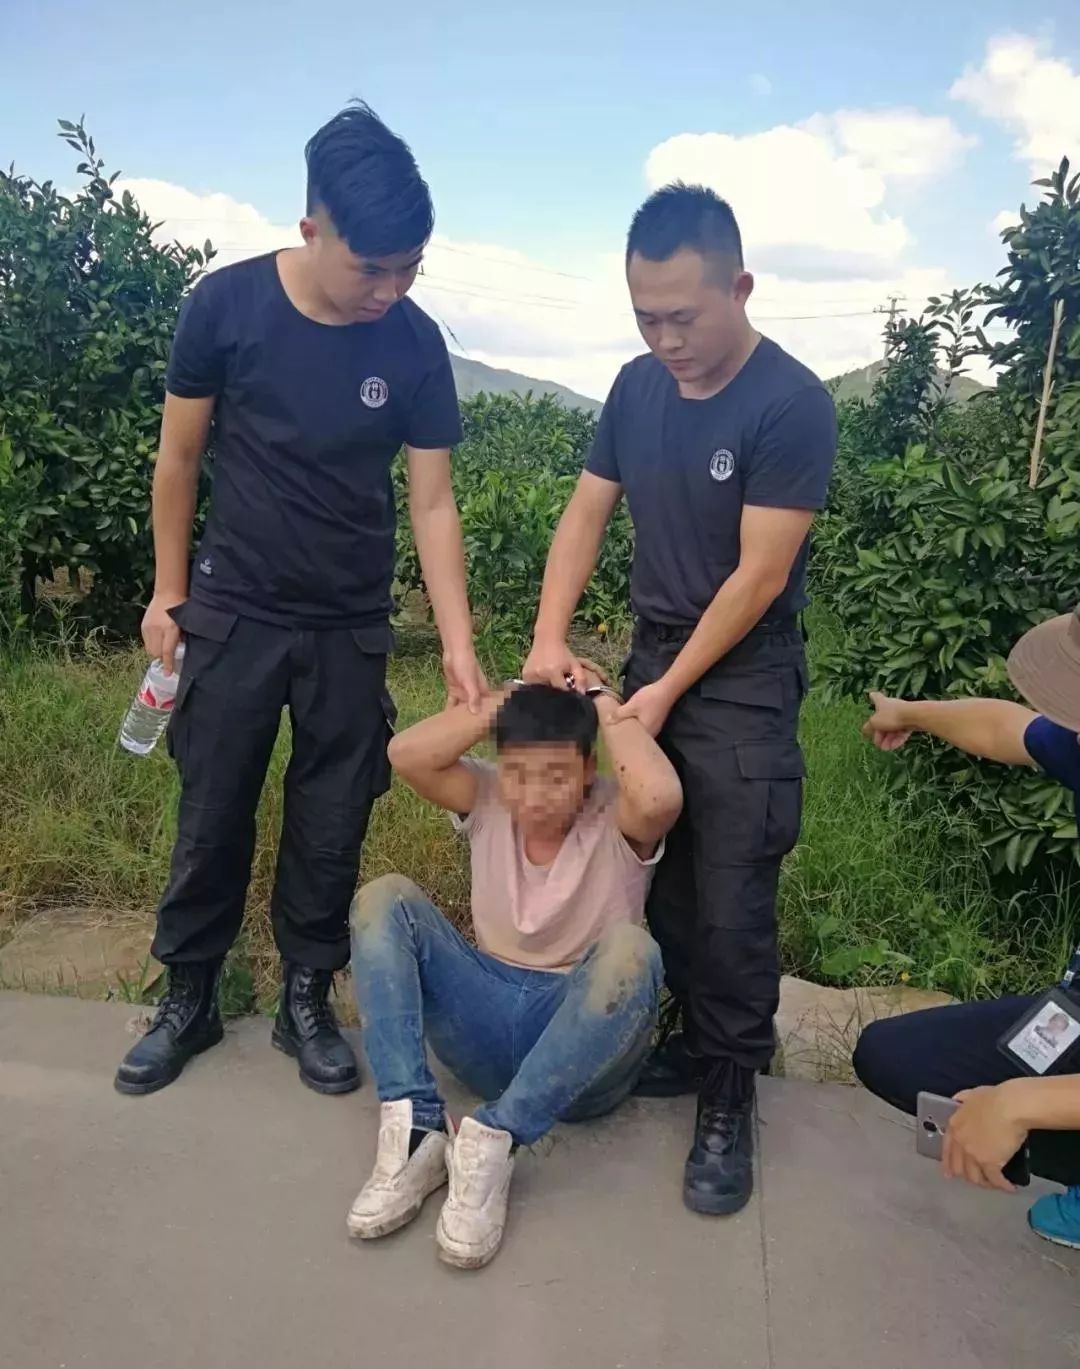 邓州男子刘某伤害别人后逃跑,被浙江警方给抓了!